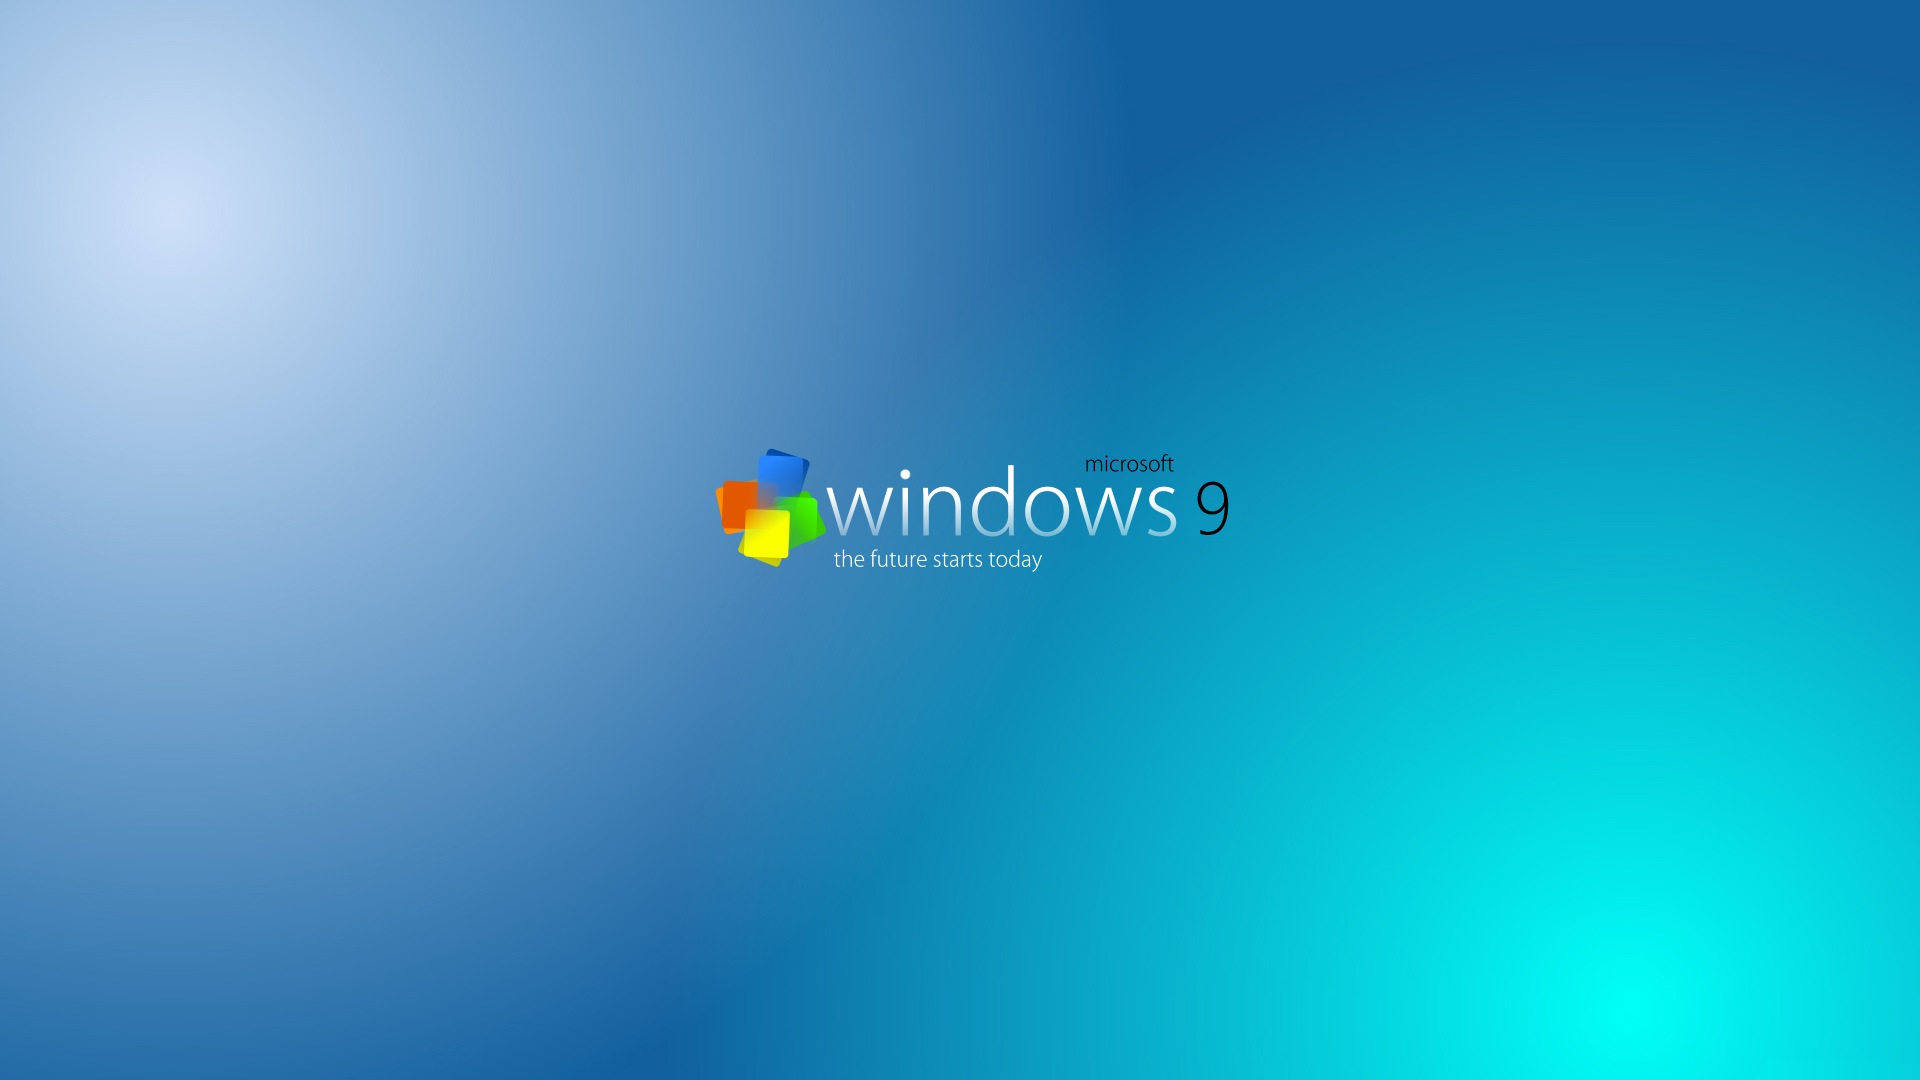 Microsoft Windowsの9システムテーマのHD壁紙 #16 - 1920x1080